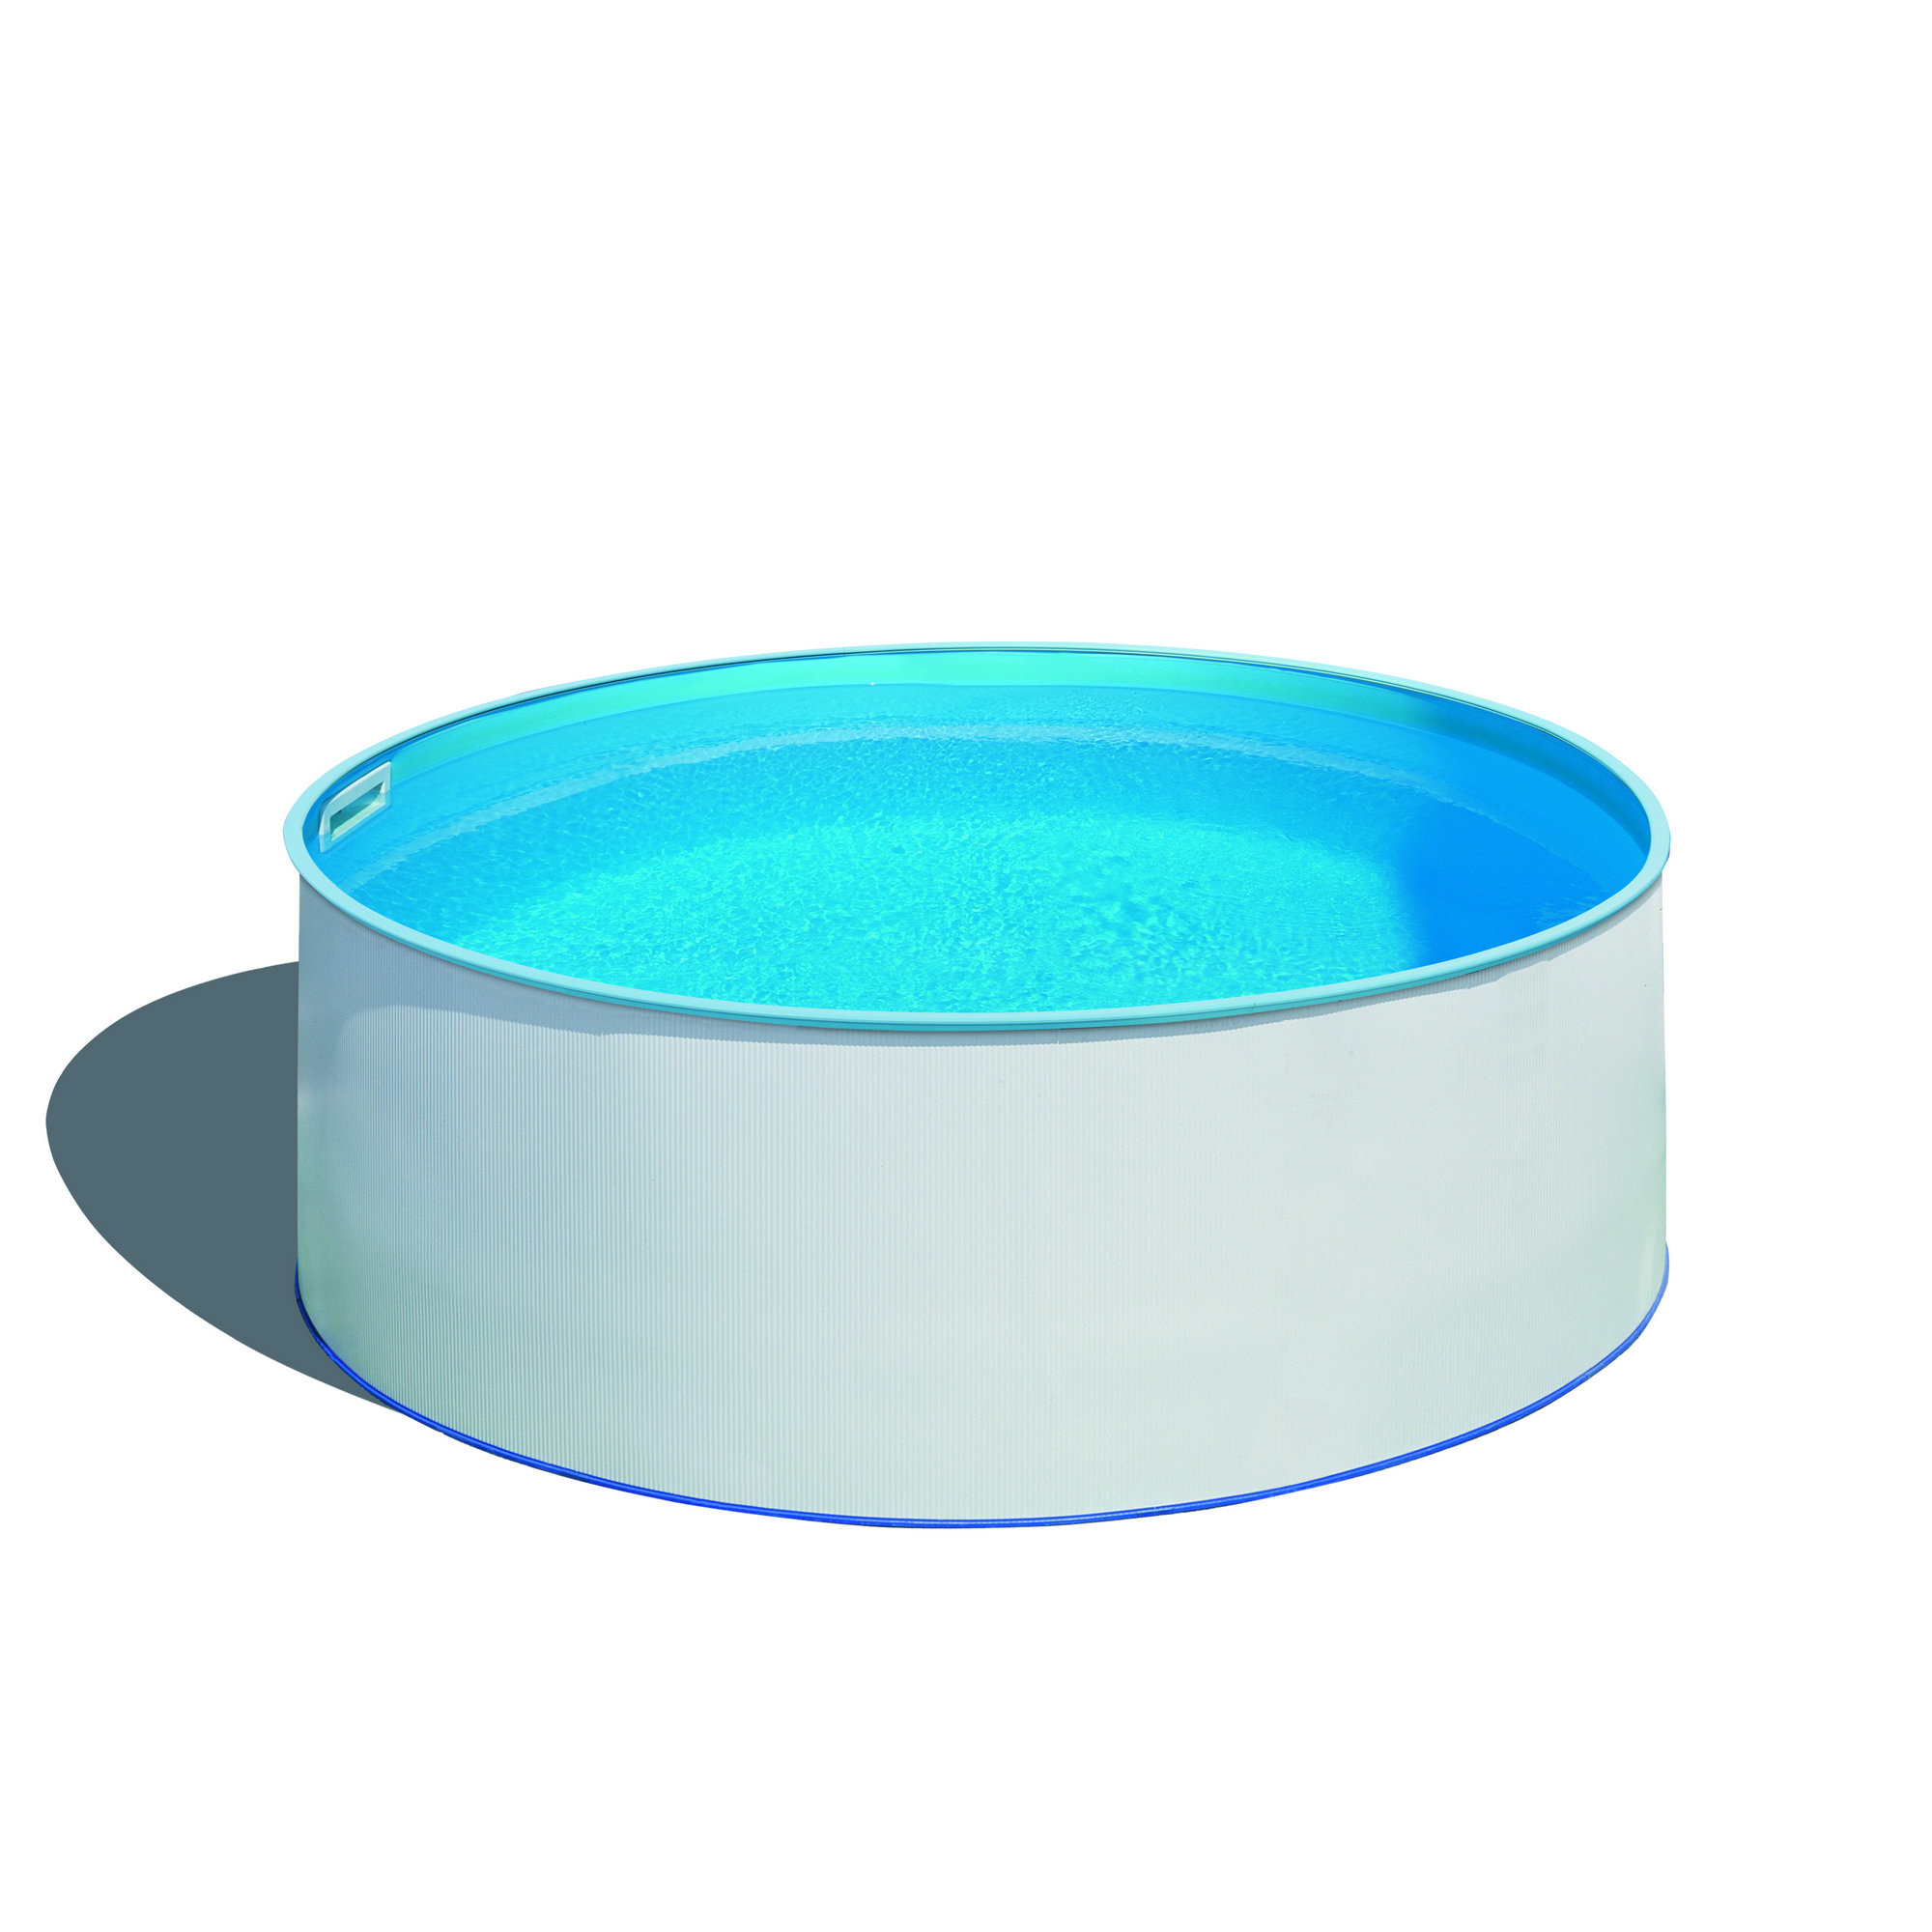 Einbaupool-Set 'Holly' blau/weiß rund Ø 420 x 150 cm + product picture